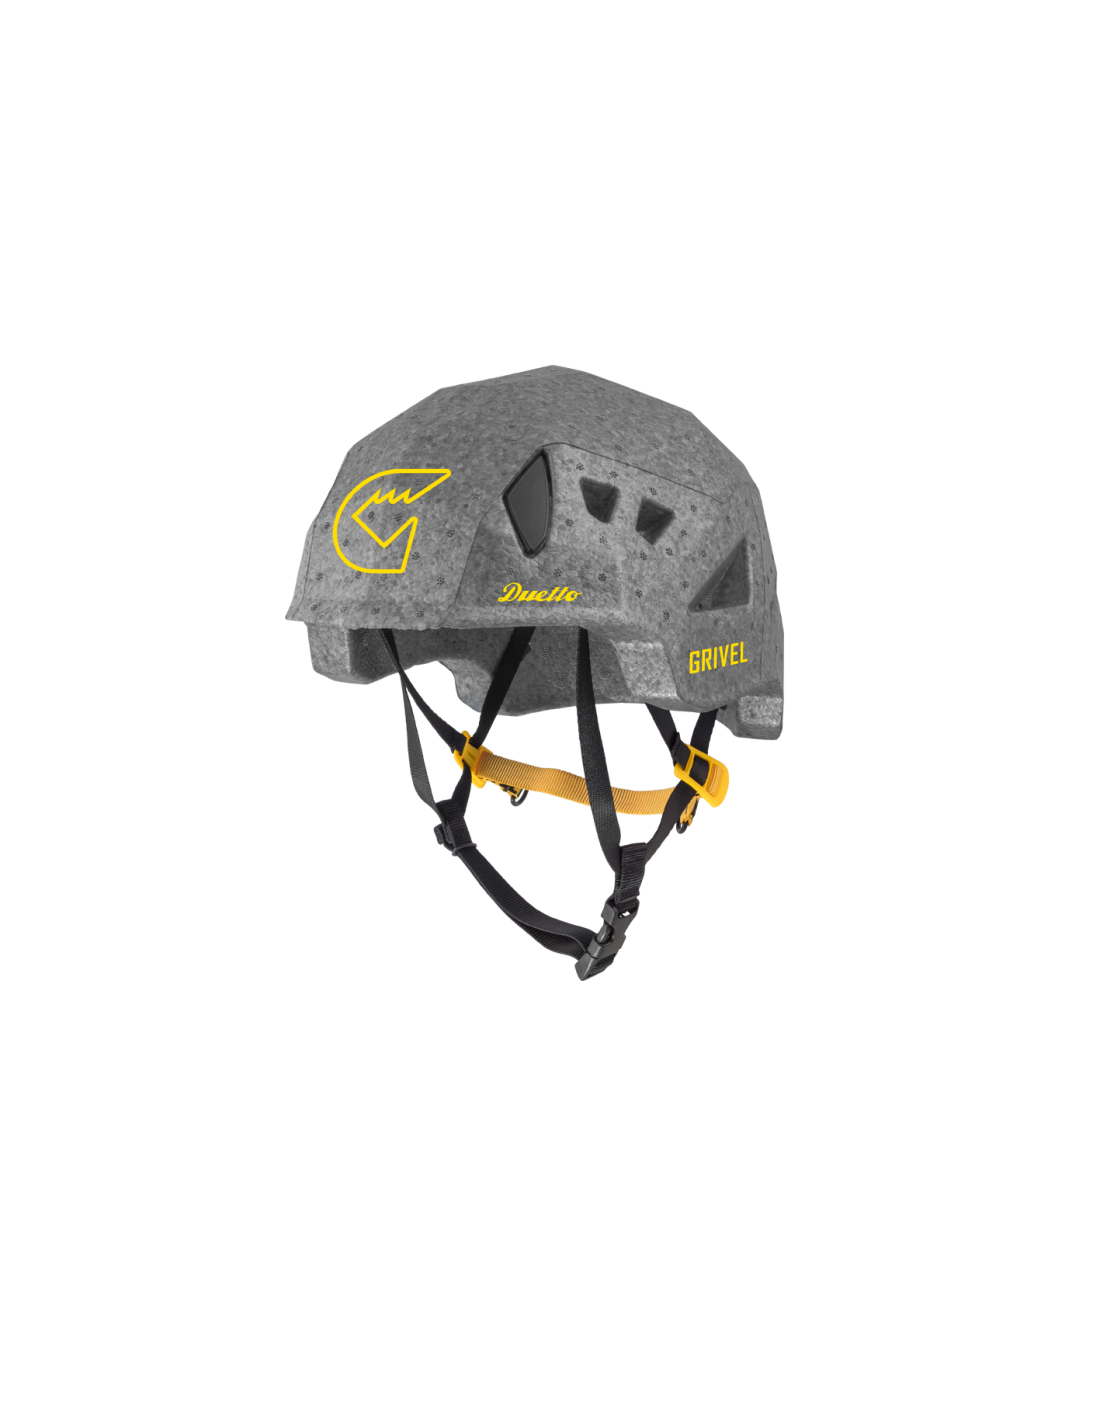 Grivel Helm Duetto, grau Kletterhelmgröße (Kopfumfang) - Einheitsgröße, Kletterhelmfarbe - Grau, Kletterhelmgewicht - 200 - 220g, von Grivel